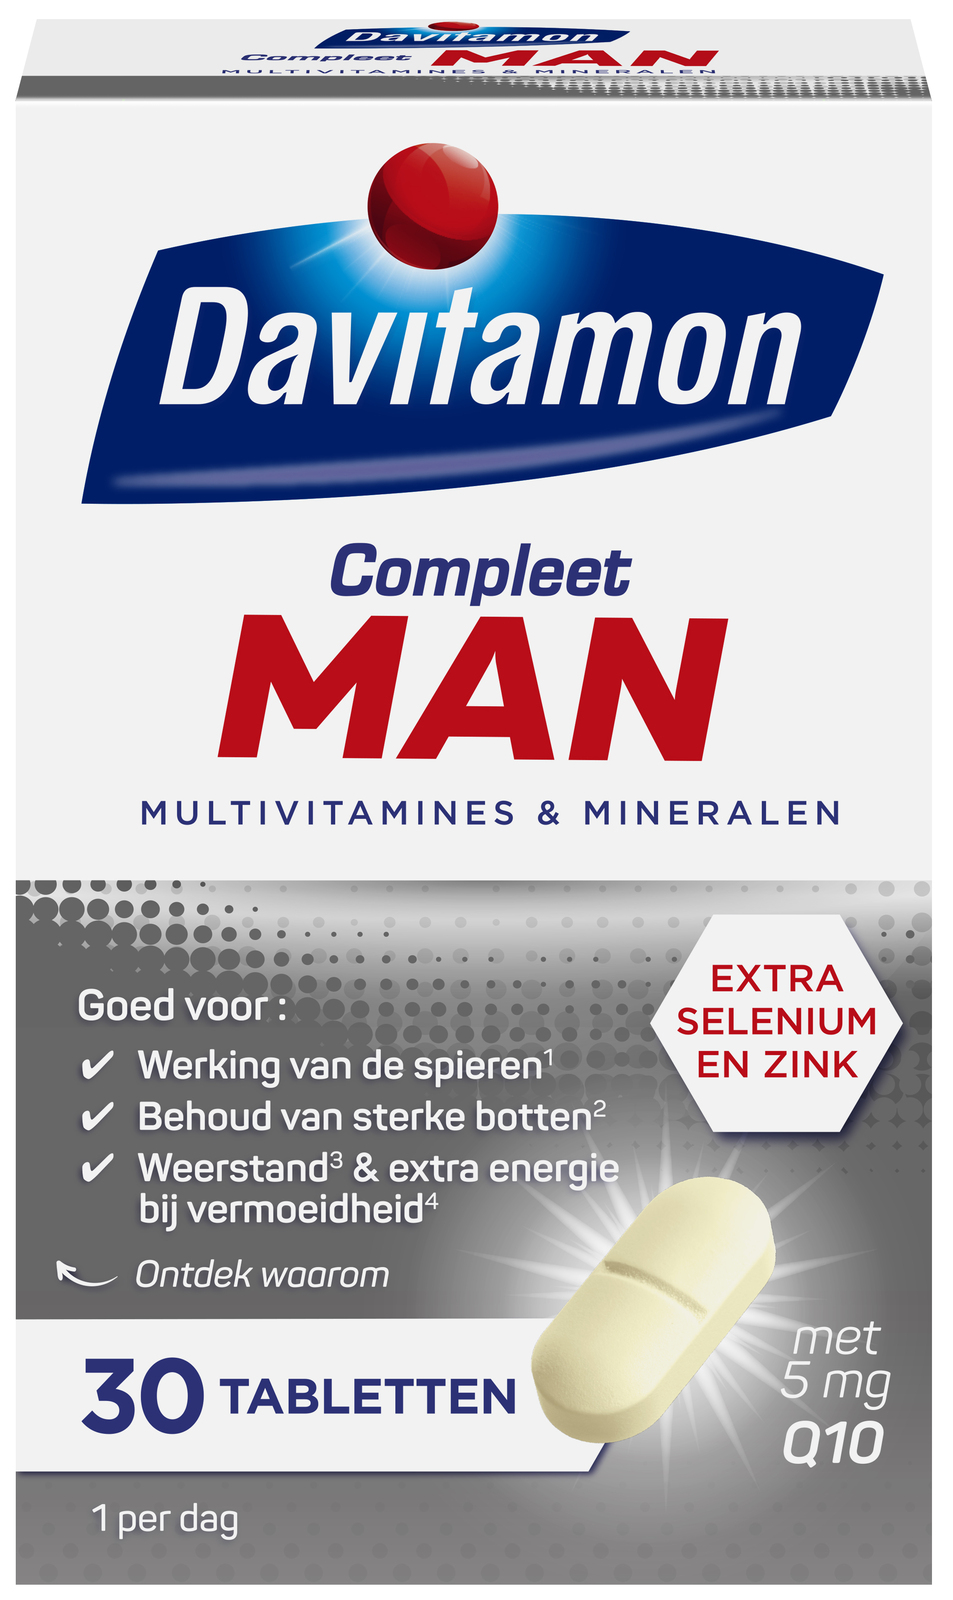 Davitamon Compleet Man Tabletten kopen